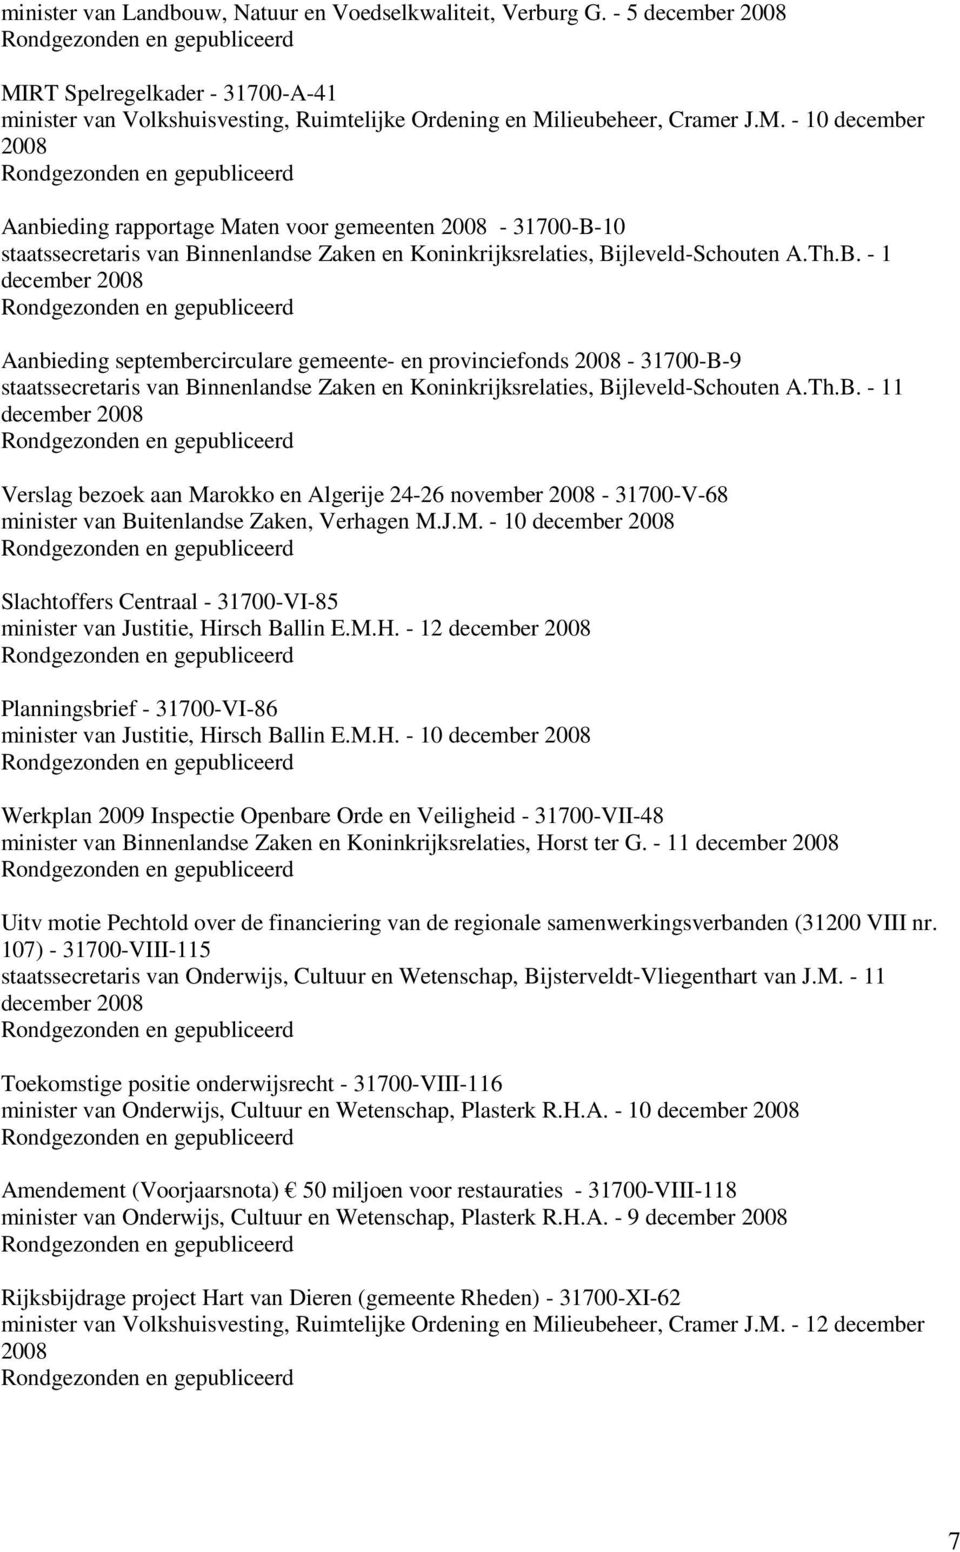 lieubeheer, Cramer J.M. - 10 december Aanbieding rapportage Maten voor gemeenten - 31700-B-